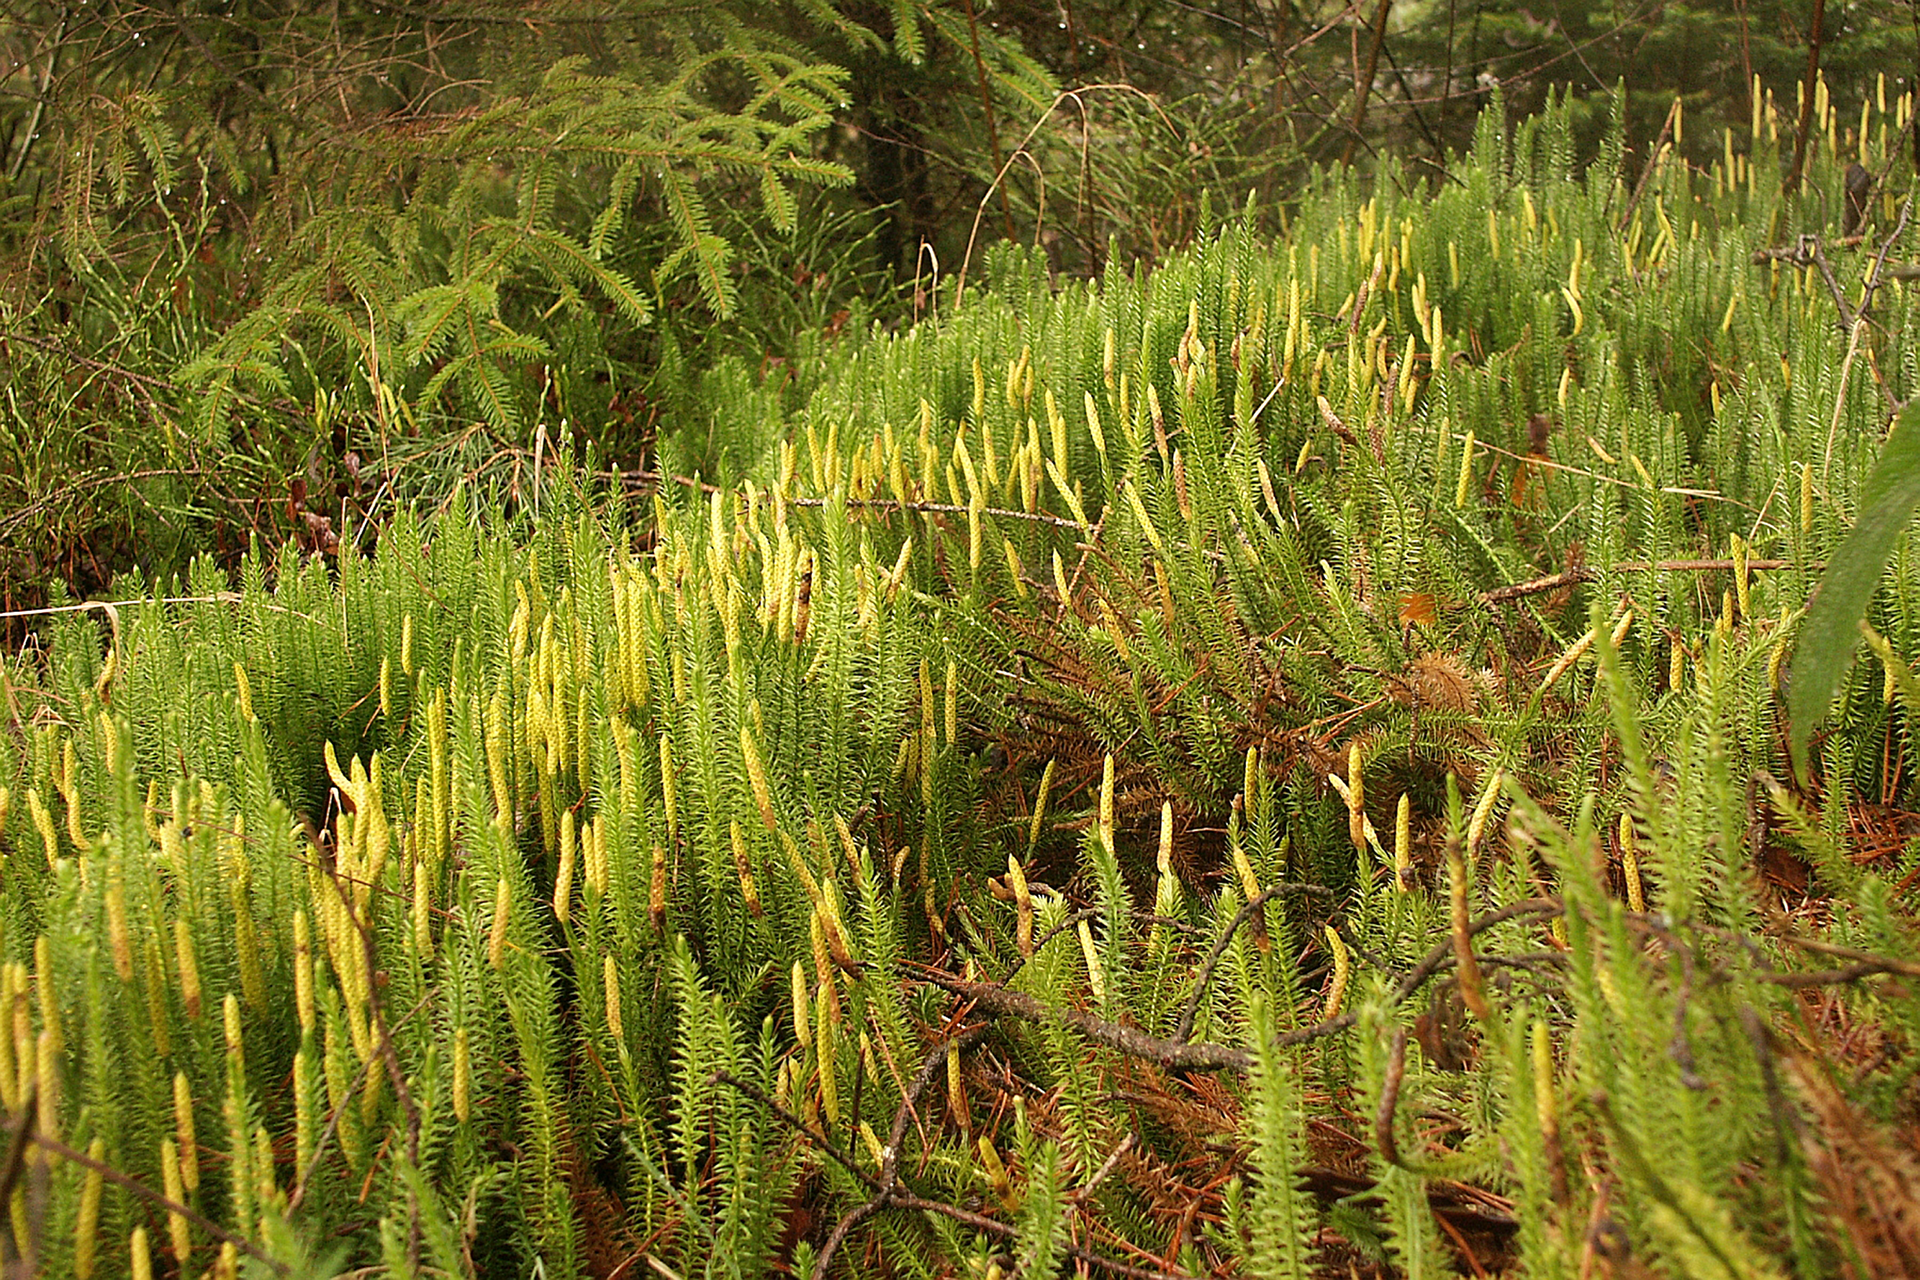 Zdjęcie przedstawia kępę widłaków. Rośliny mają wzniesione ku górze pędy pokryte drobnymi listkami. Pędy są zielone, a na szczytach posiadają żółte kolby.